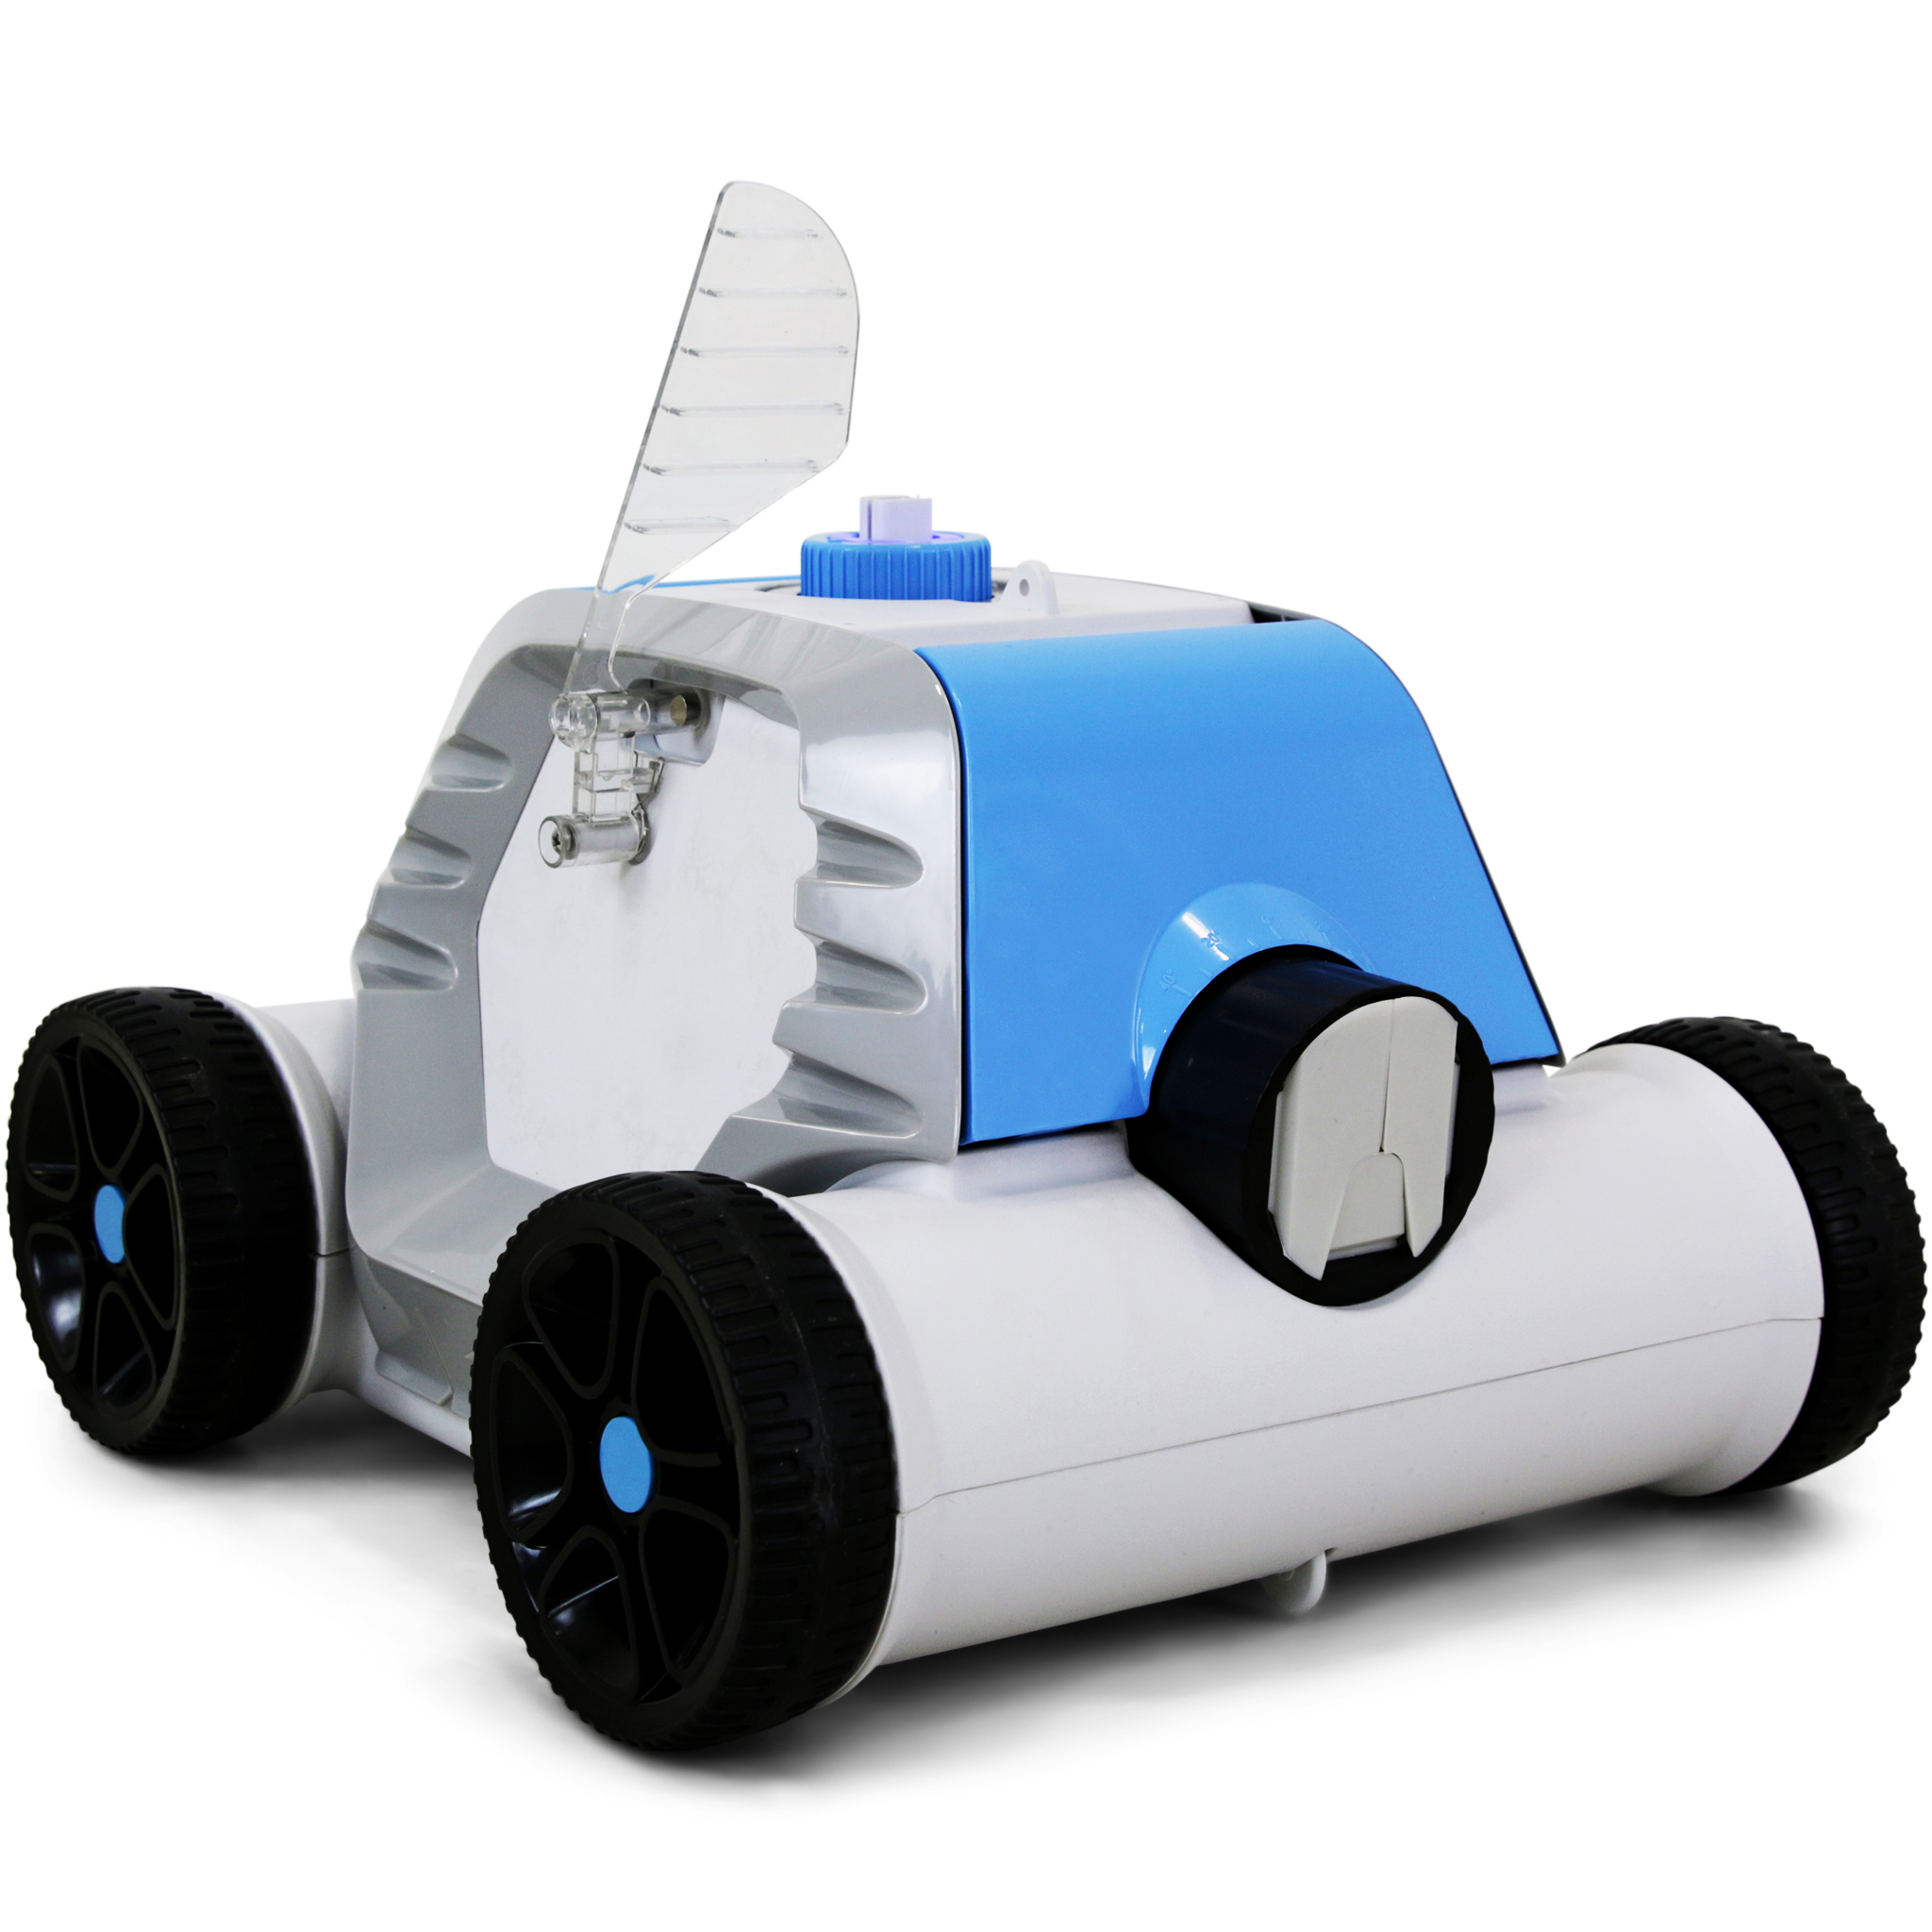 Trådlös poolrobot med litiumbatteri | Lyfco Tornado F1